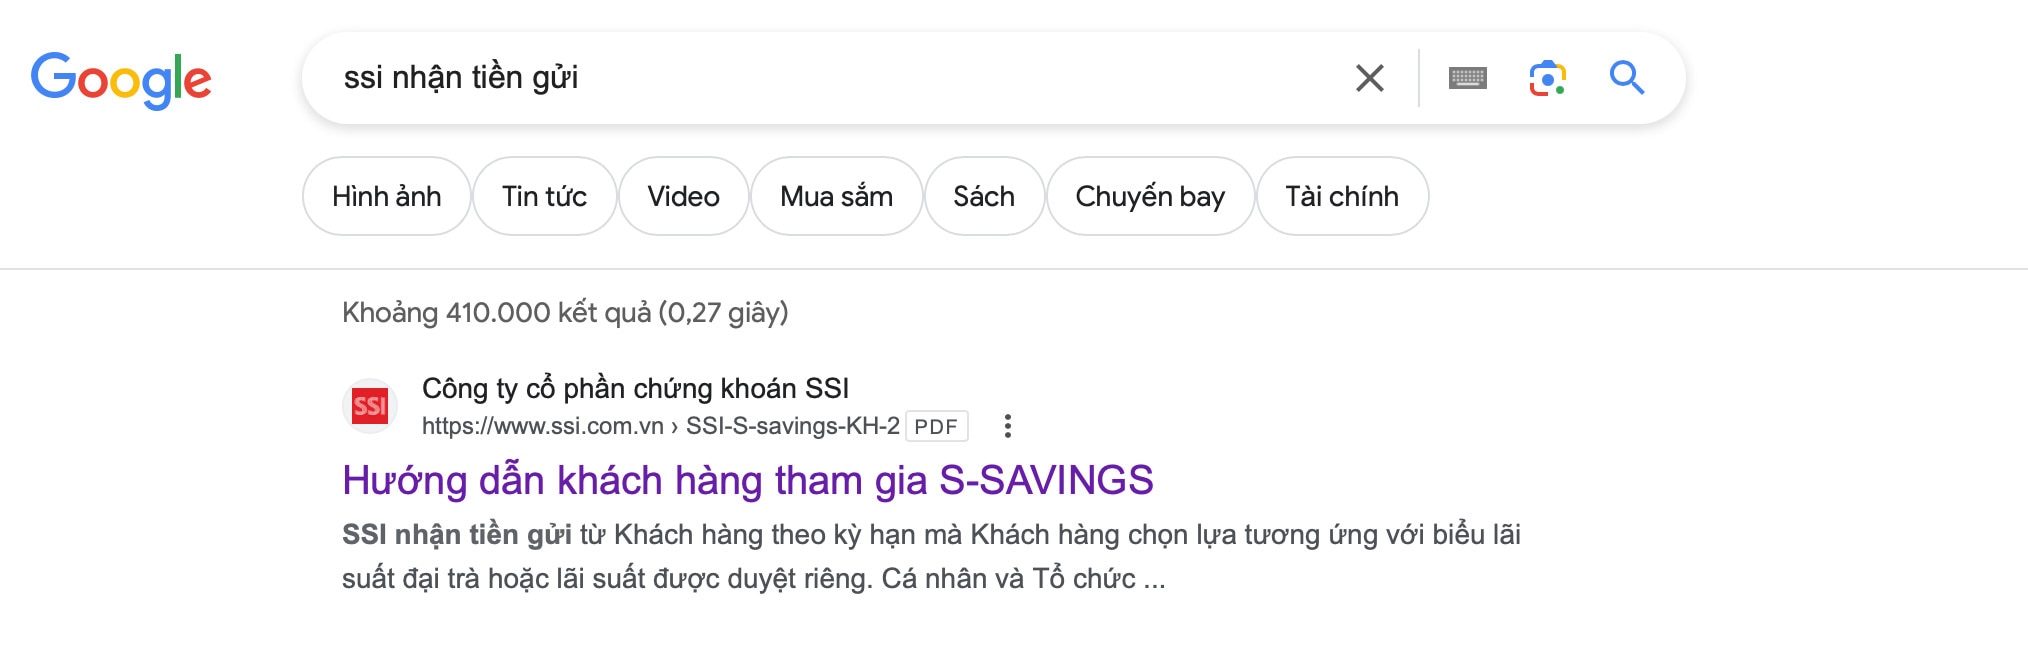 Sản phẩm tiền gửi S-Savings của SSI hiện ngay vị trí top 1 khi tìm kiếm trên google. Ảnh chụp màn hình.